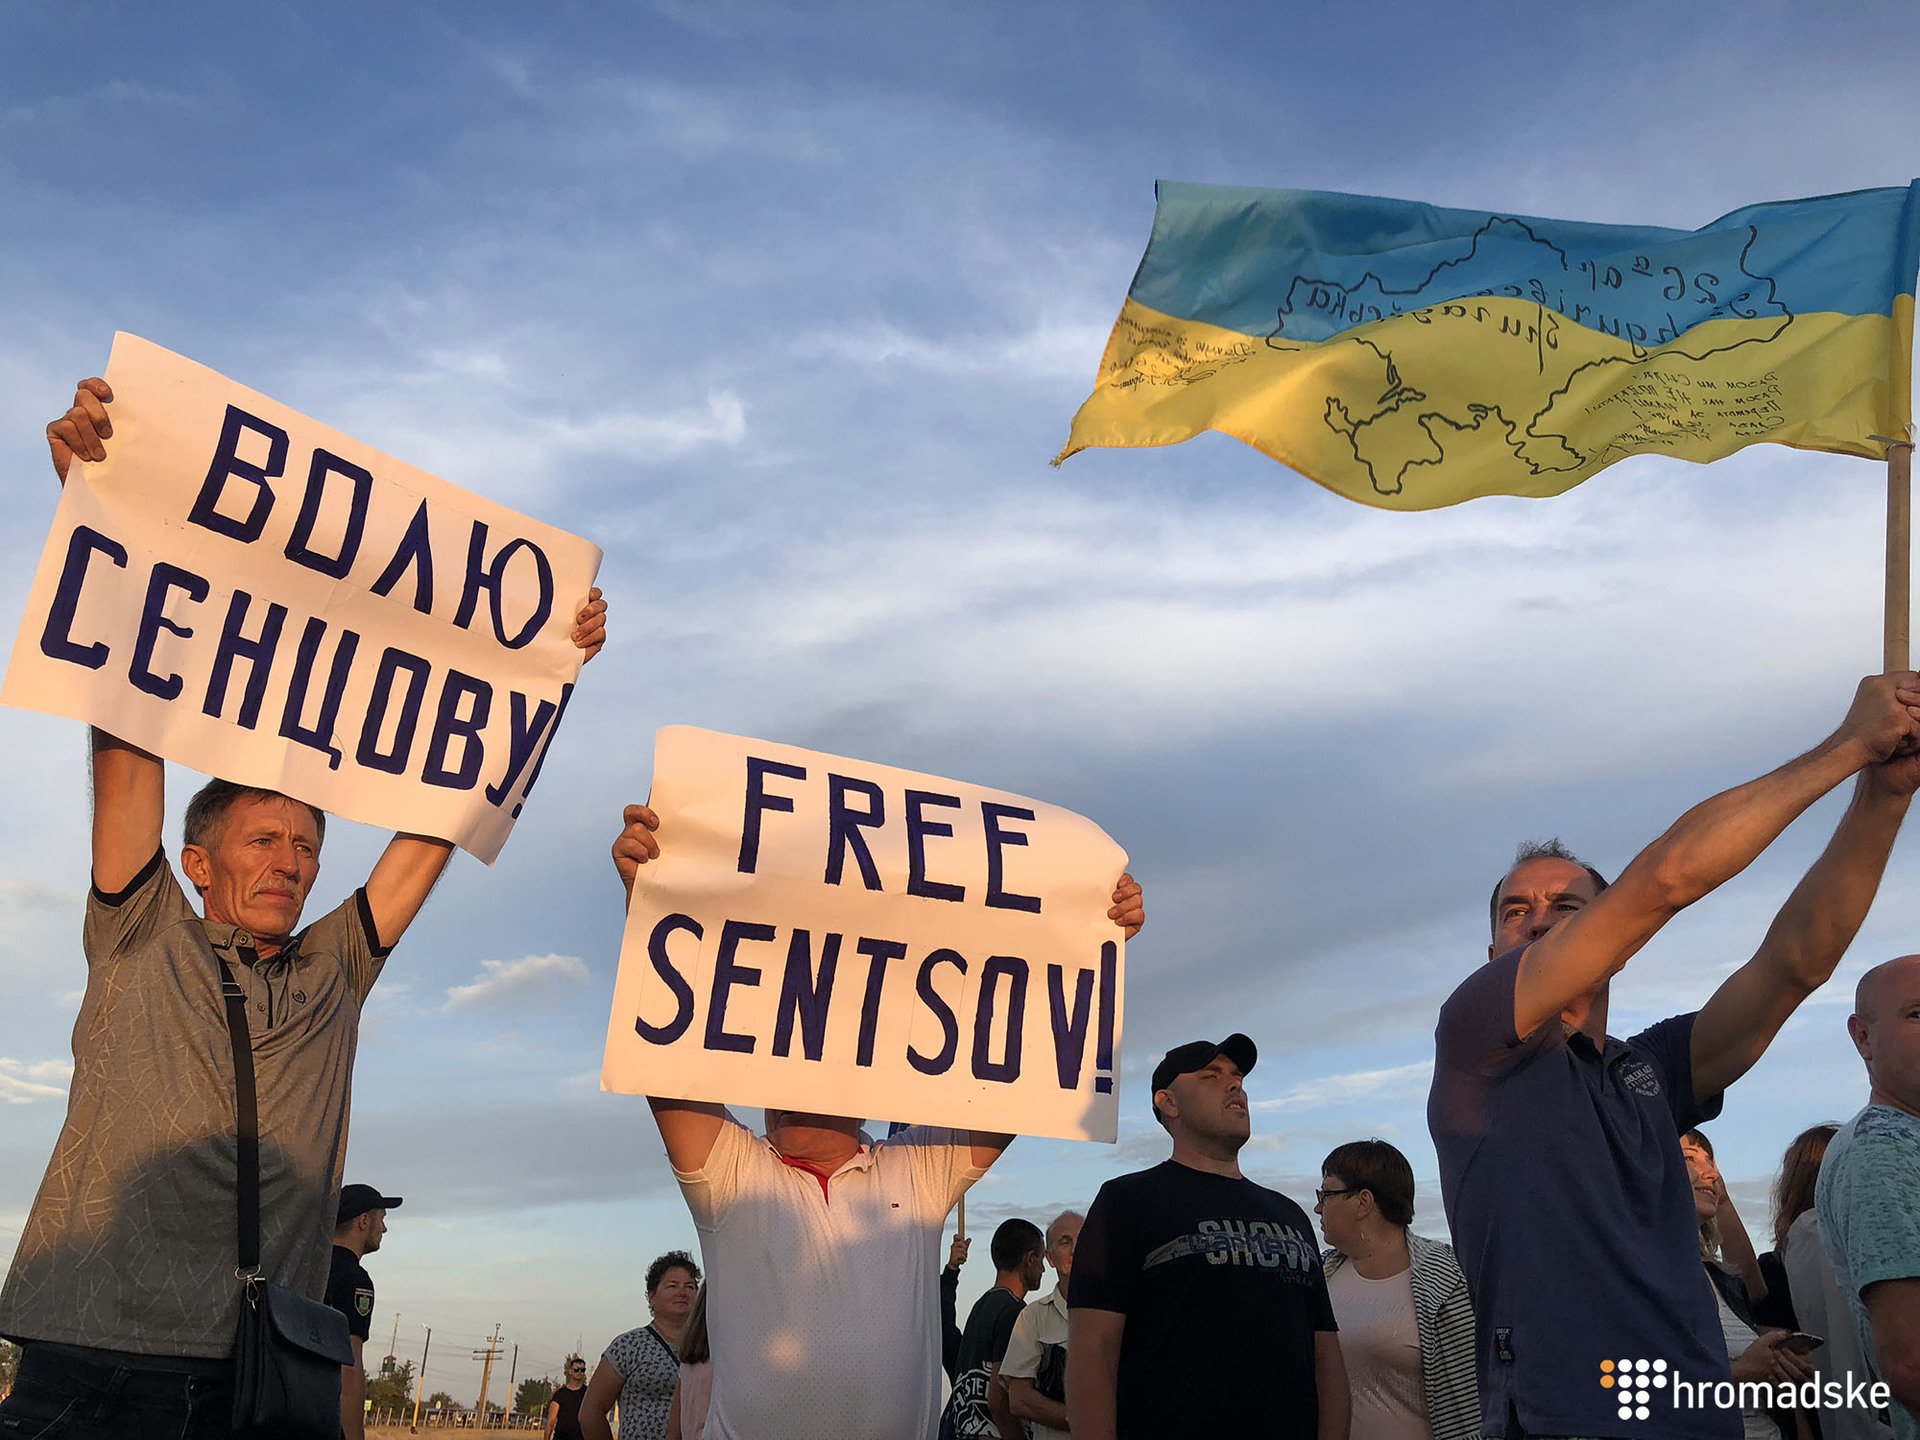 Украинская группа "Бумбокс" выступил на границе с аннексирована Крымом на пункте пропуска "Каланчак" в Херсонской области. Так группа провела акцию протеста с требованием освободить всех украинских политических заключенных. 